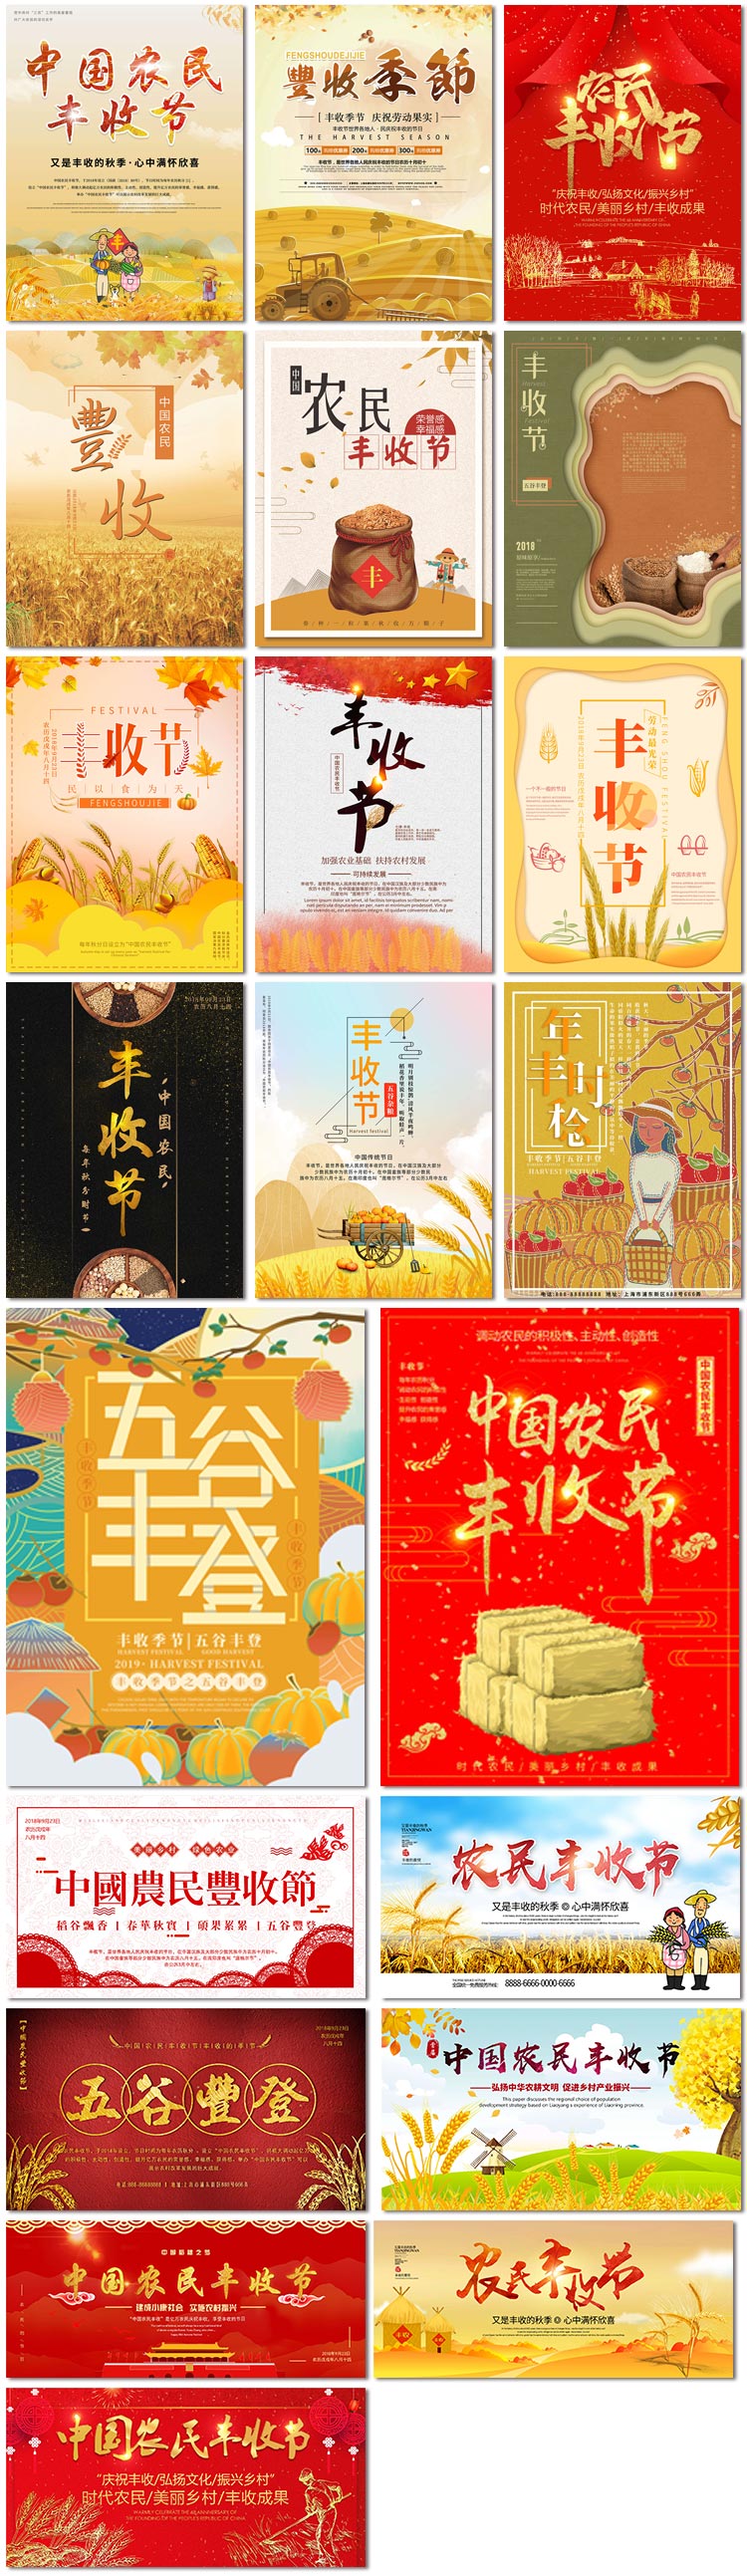 丰收节农名五谷丰登小麦穗稻田中国传统节日海报psd模板素材设计